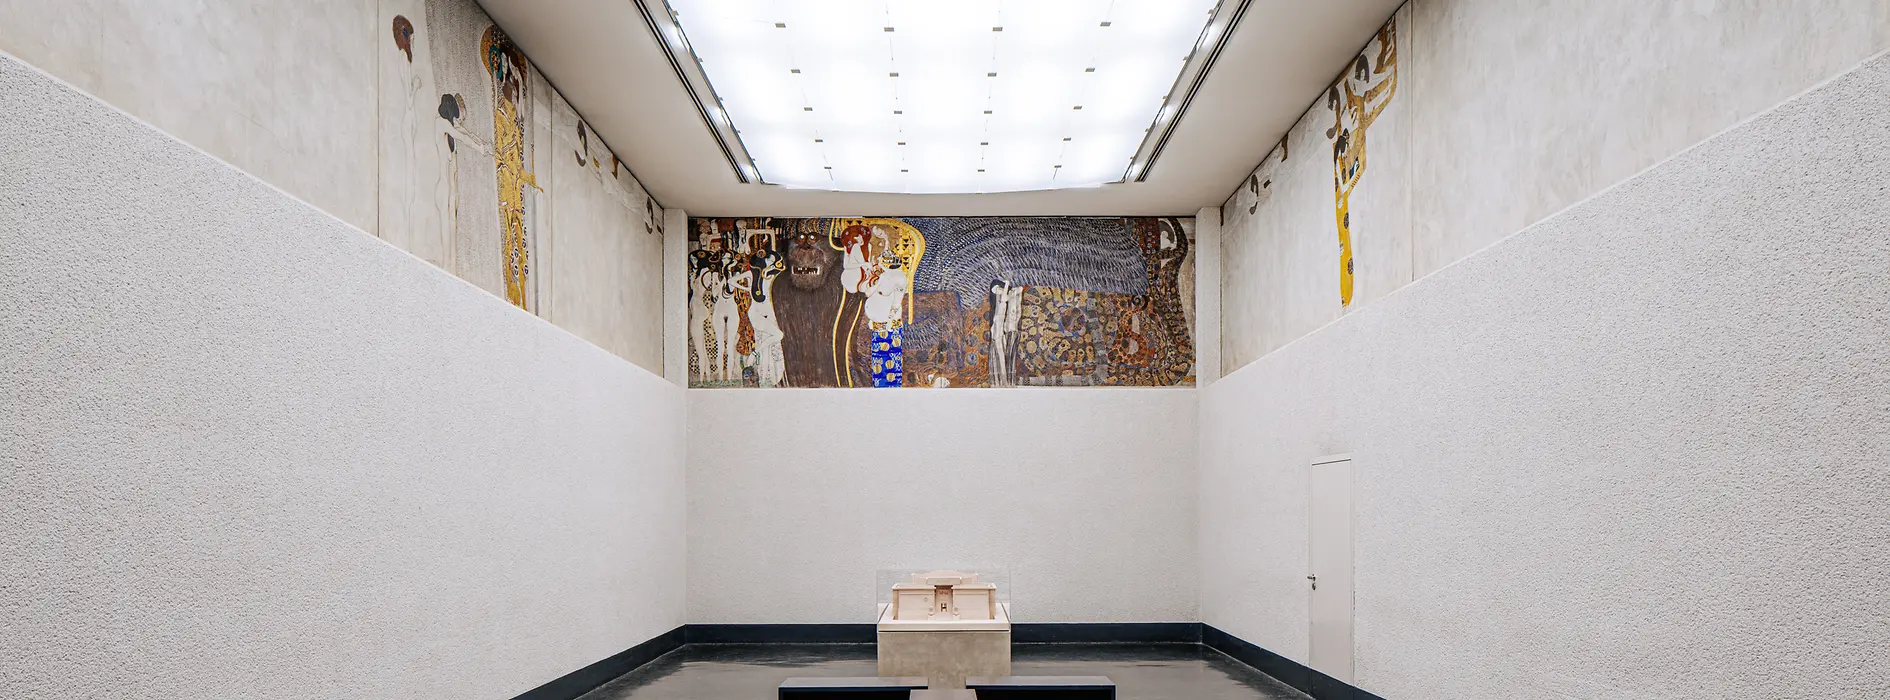 Cuadro de Gustav Klimt: Bethovenfries 